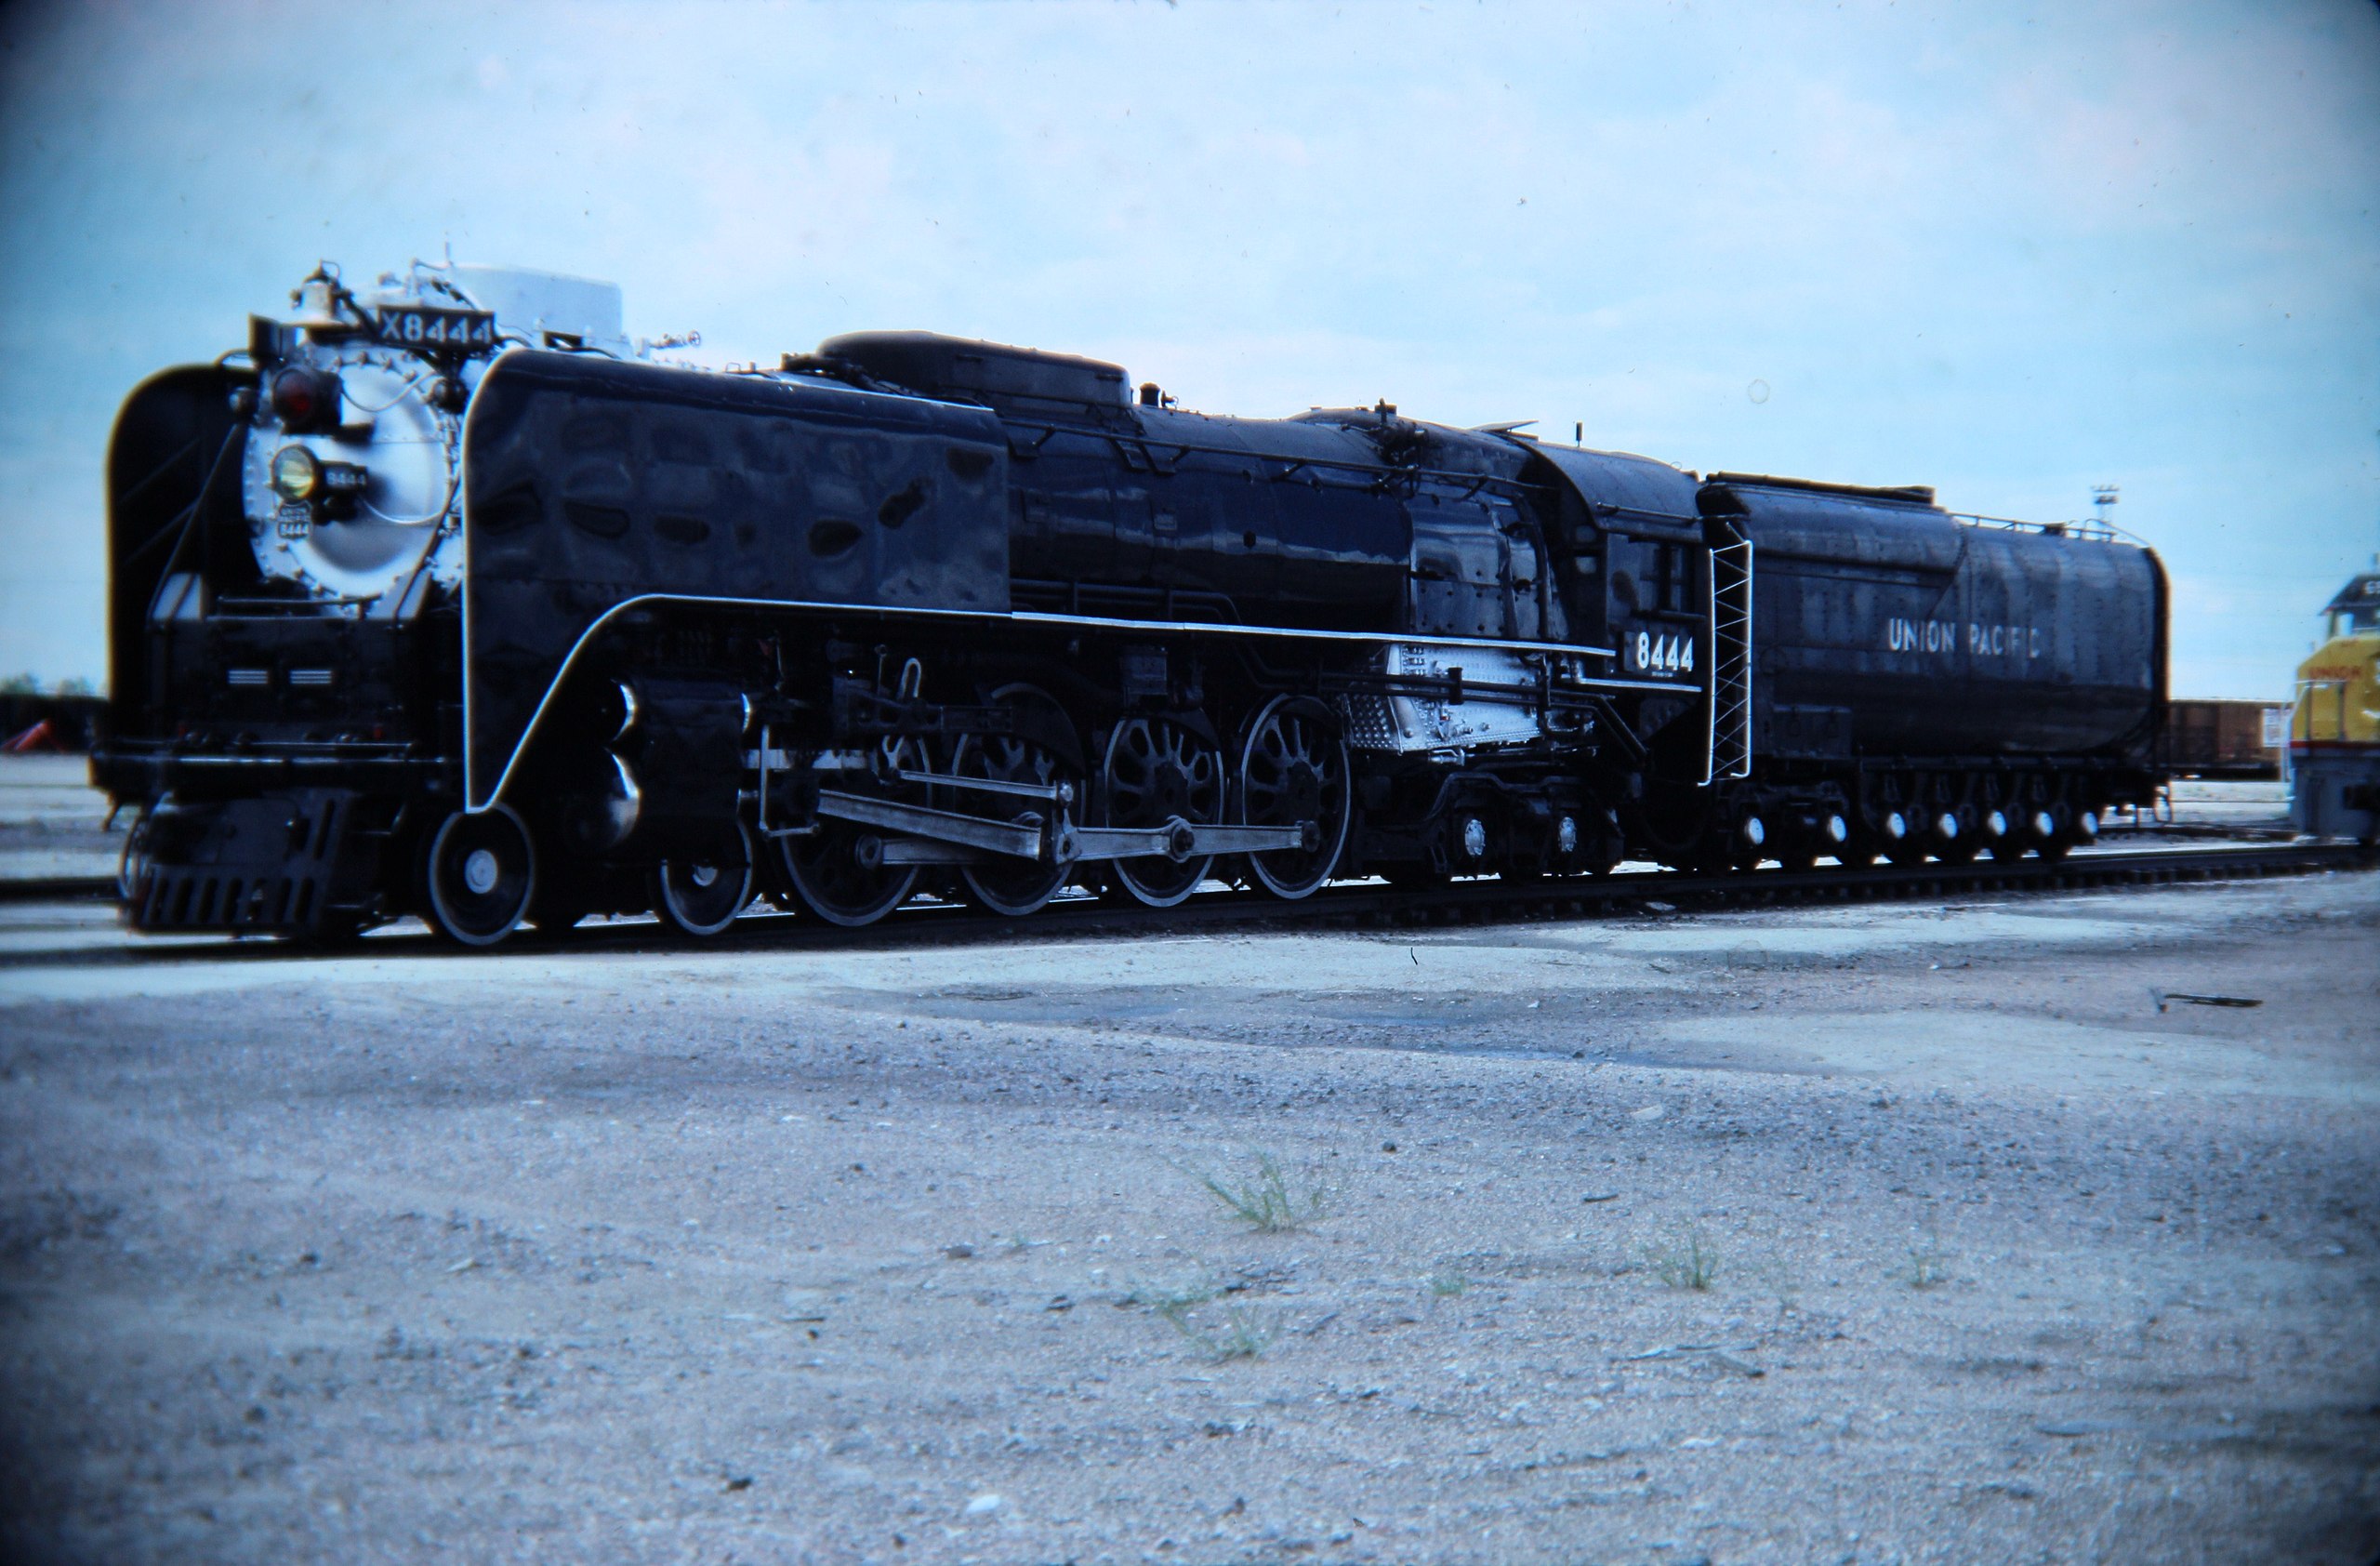 Union Pacific 844 - Wikipedia